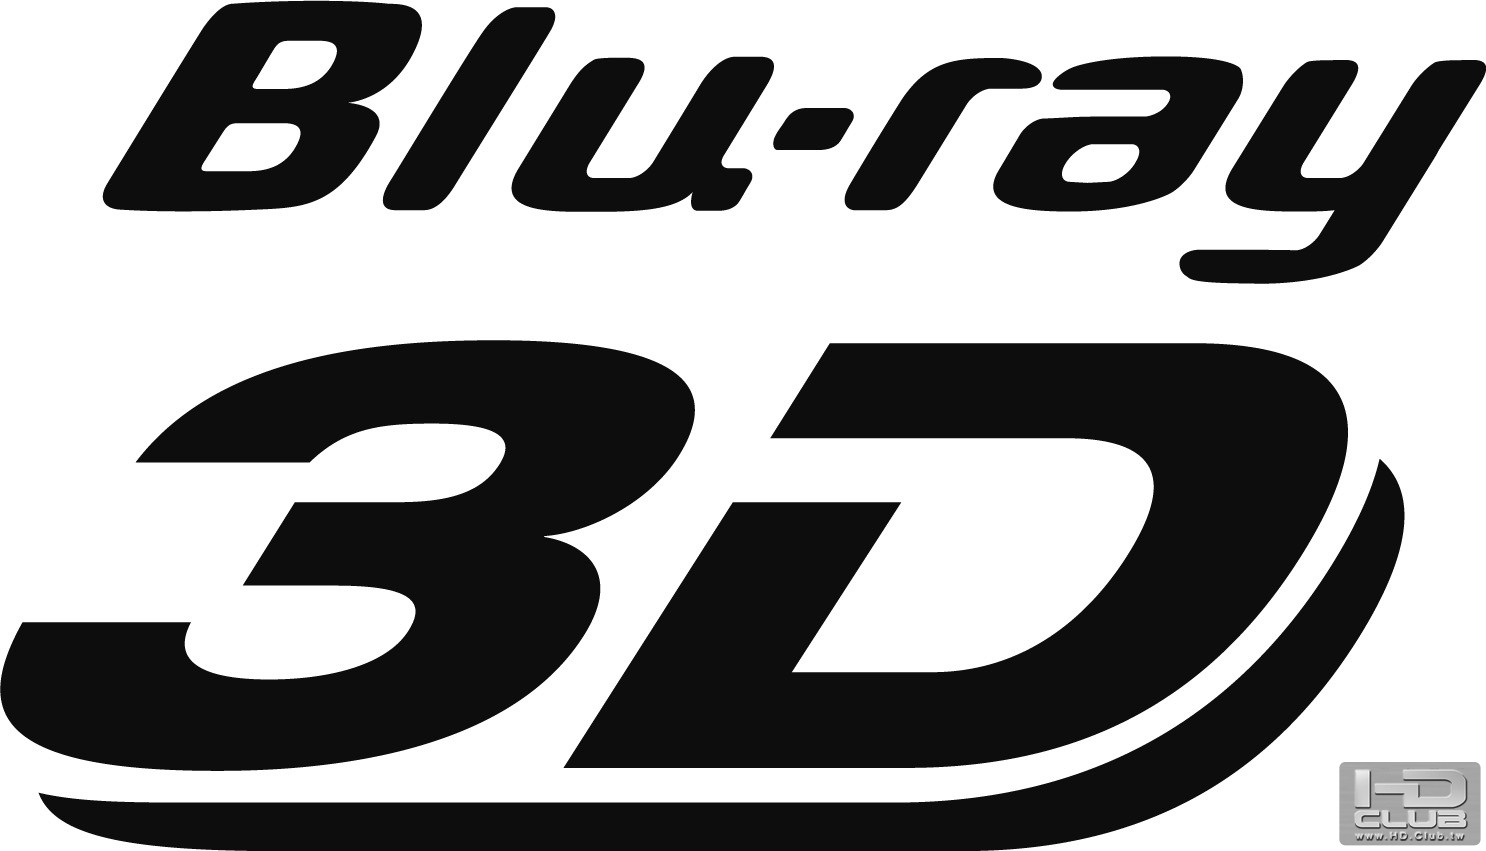 blu-ray_3d_logo11.jpg